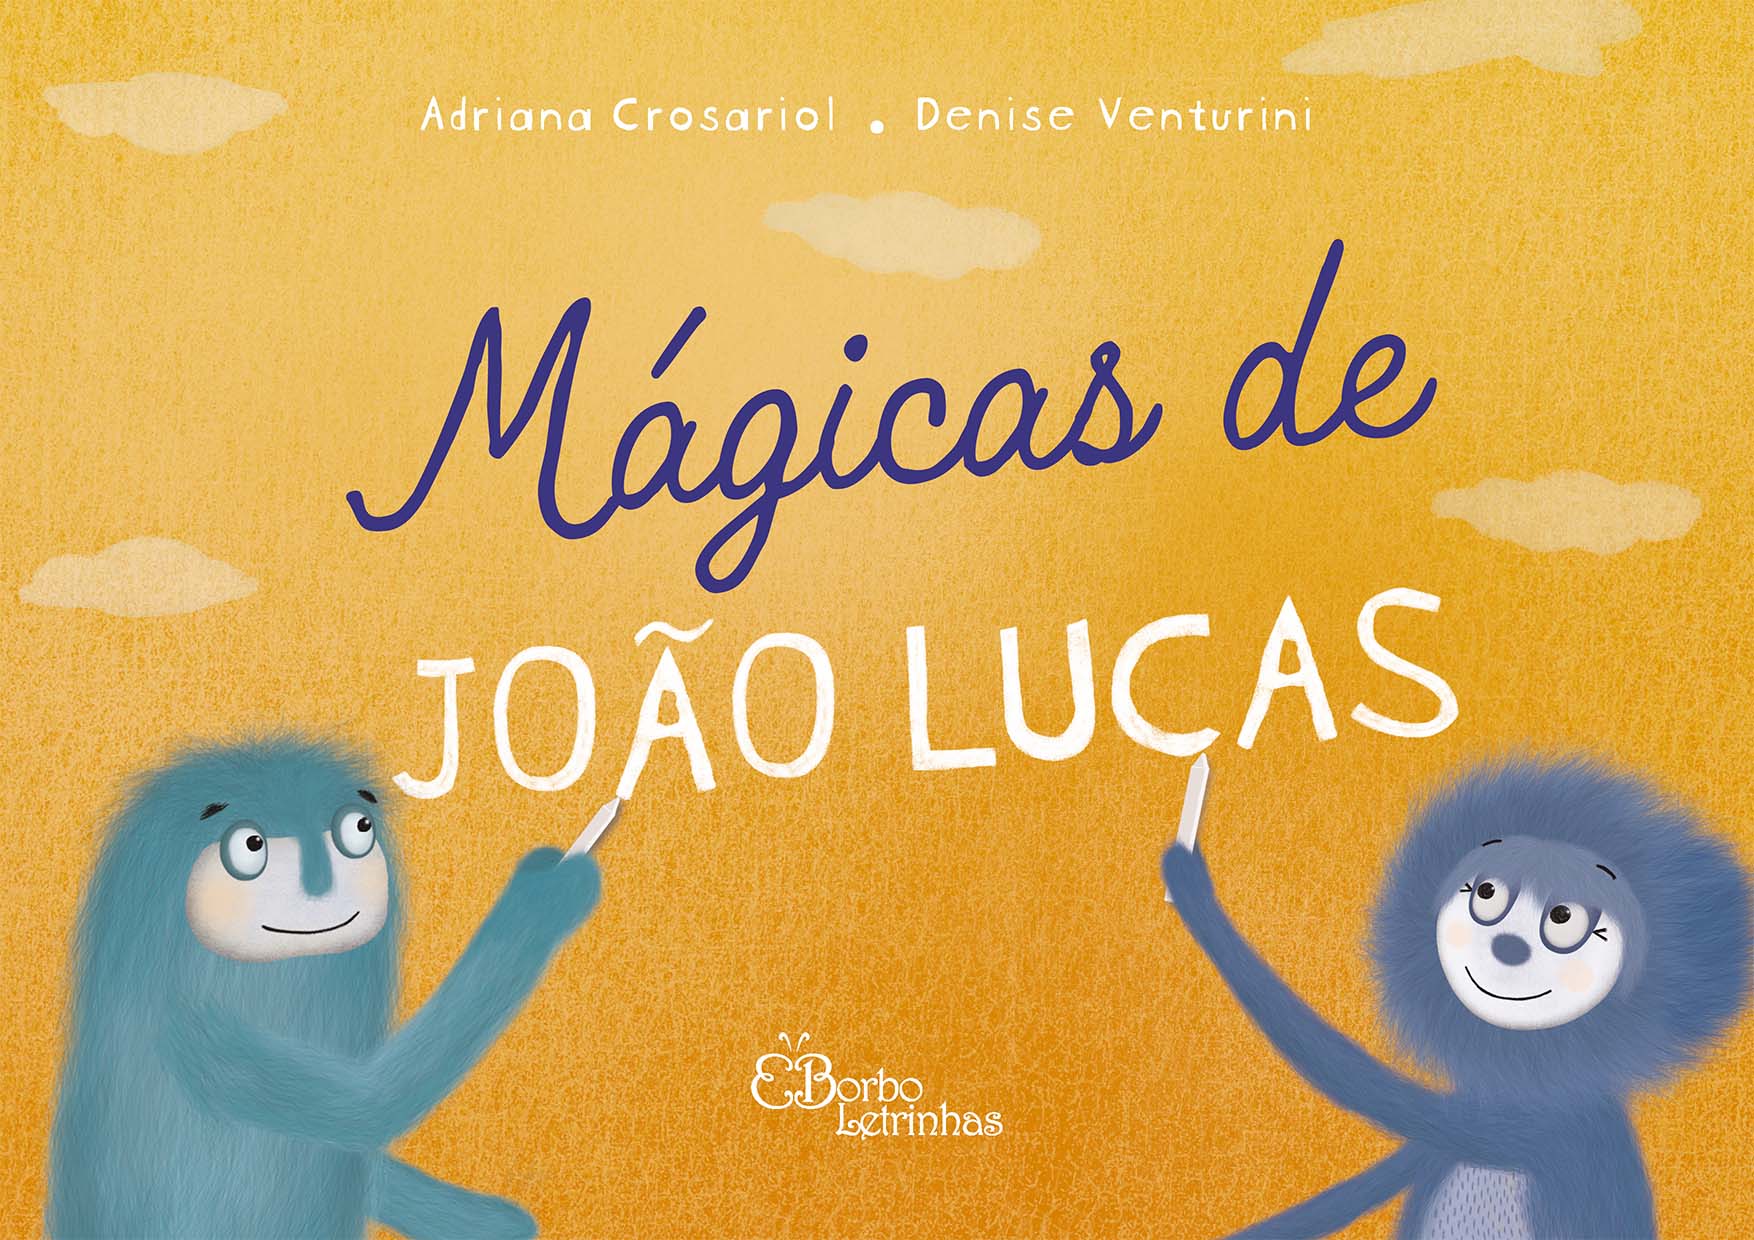 Mágicas do João Lucas